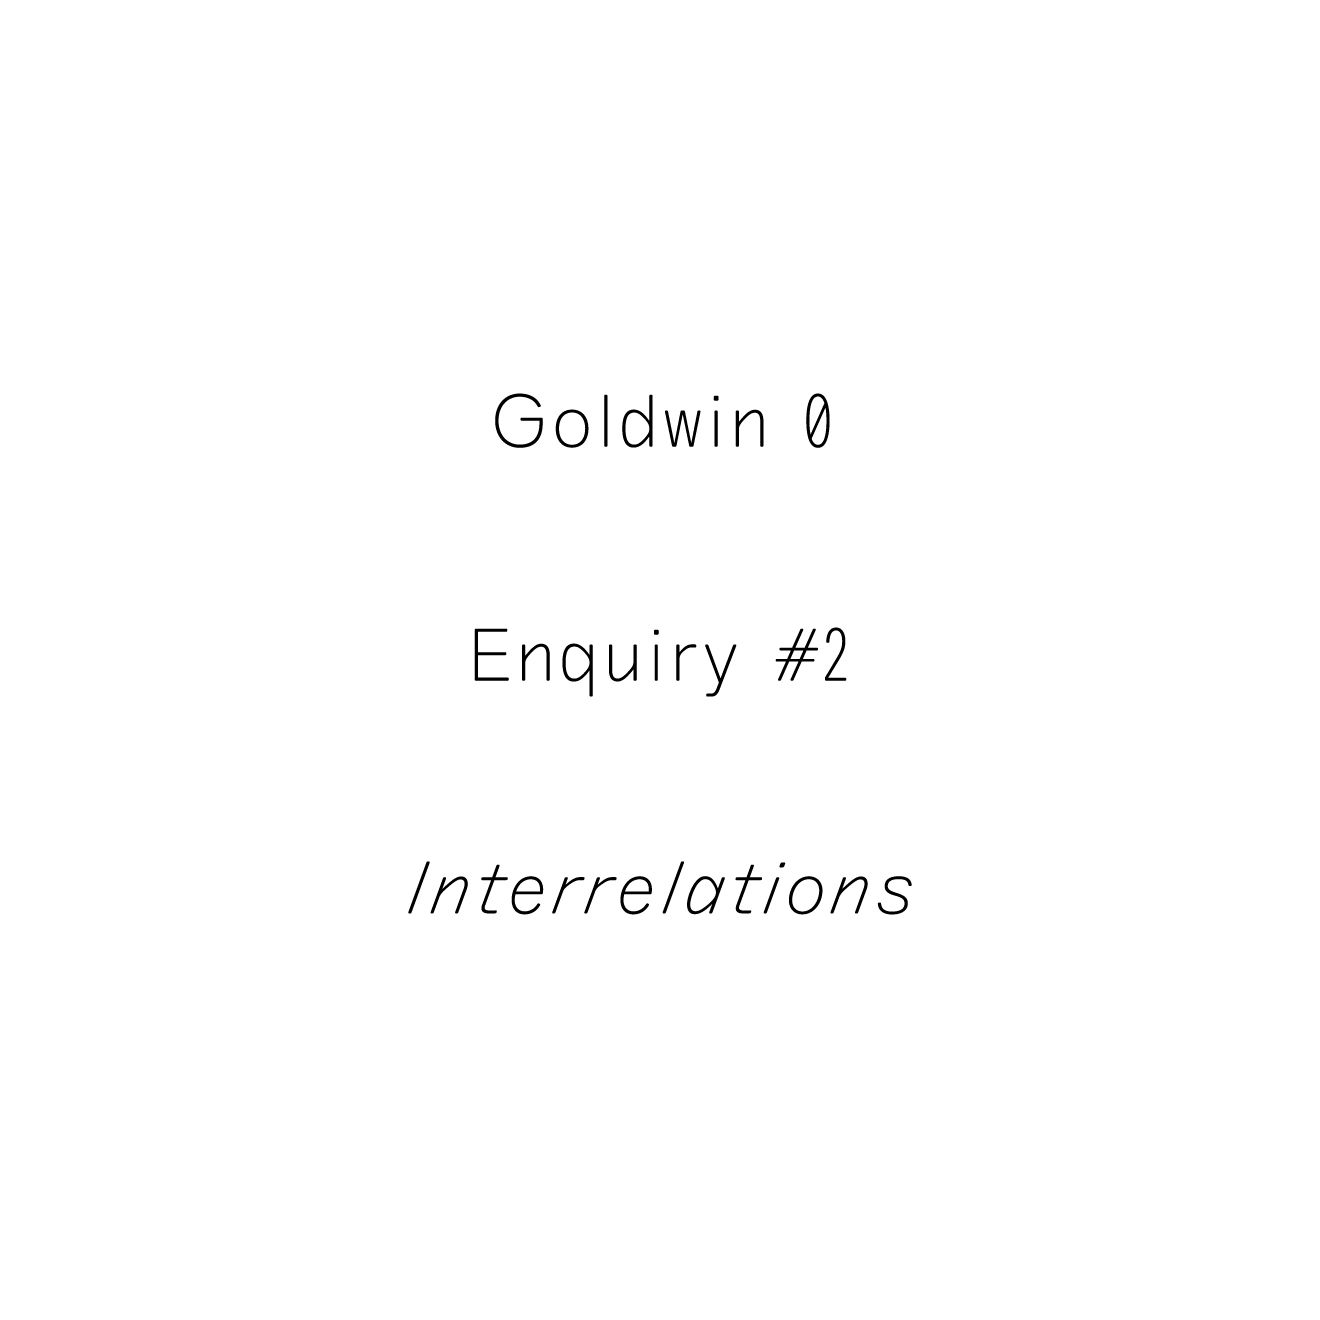 Goldwin 0 Enquiry #2